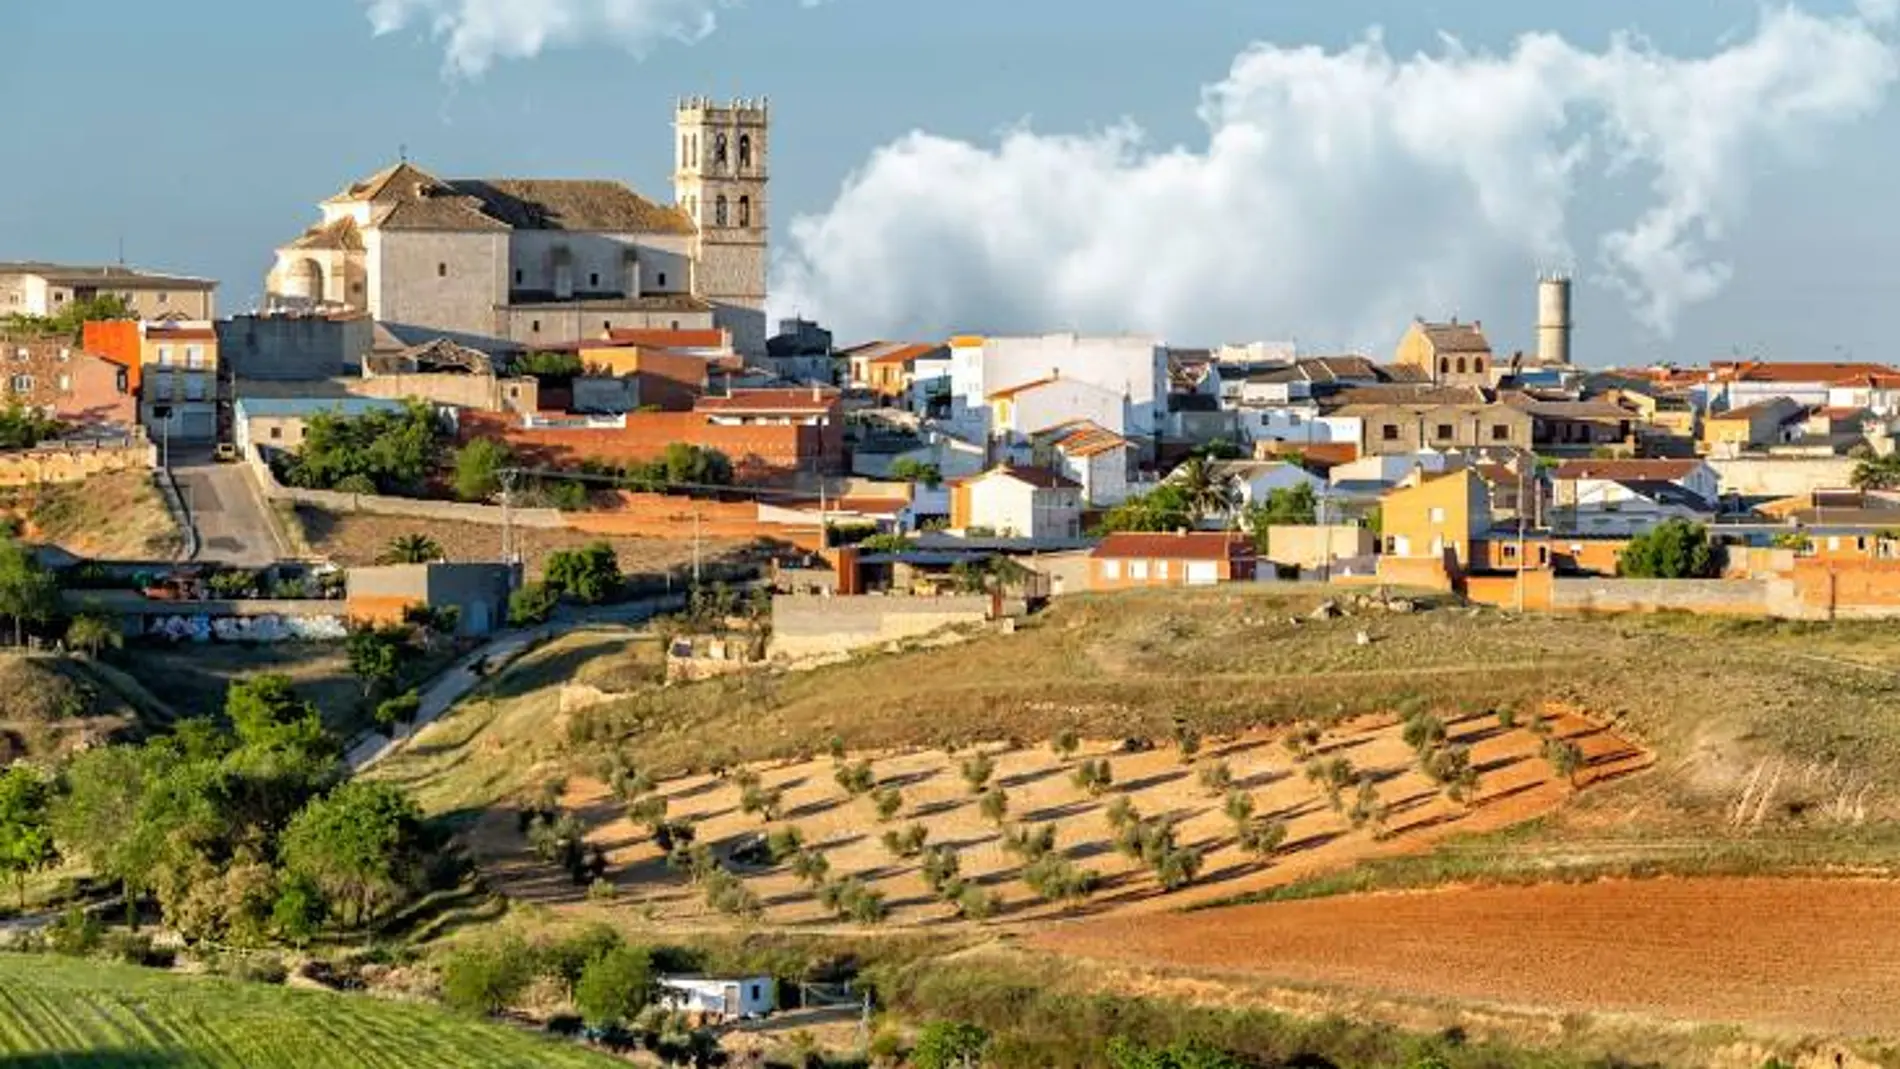 Imagen del pueblo toledano que es el más antiguo de Castilla-La Mancha